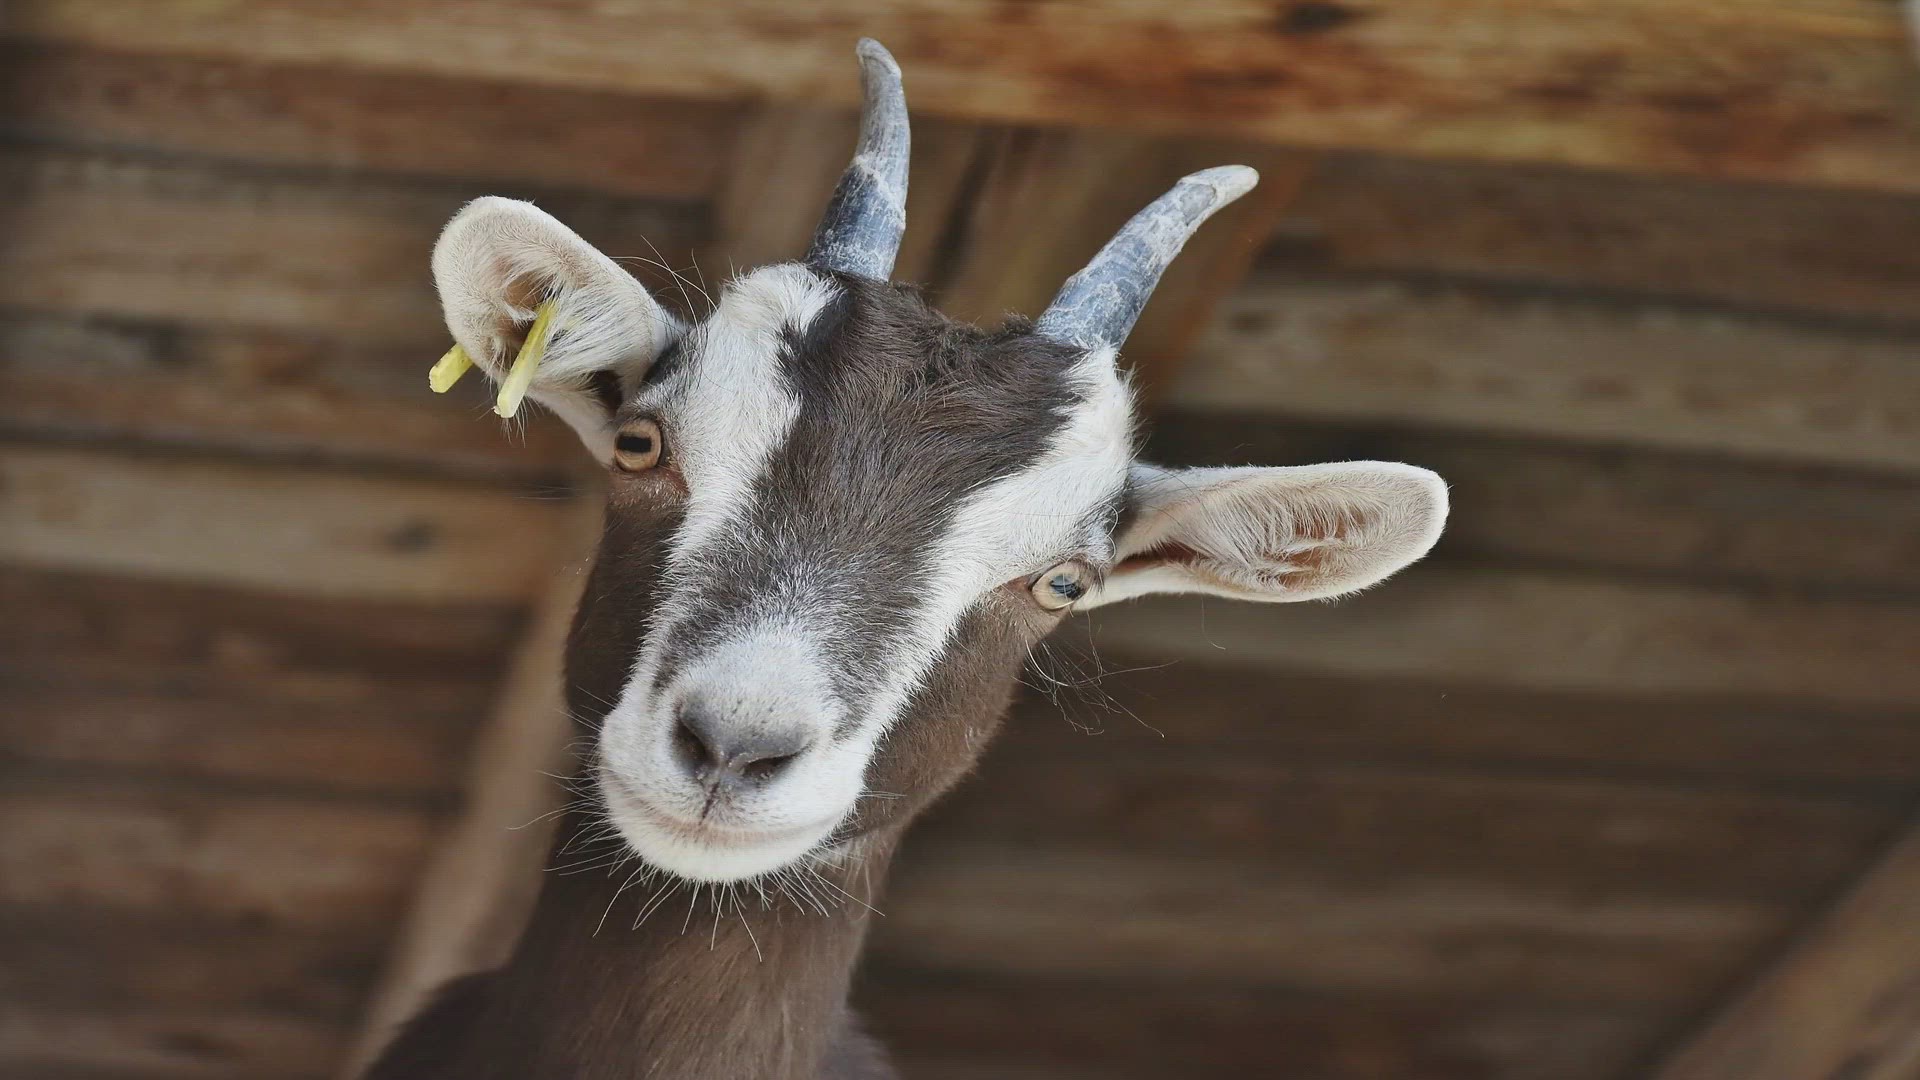 Pygmy Goat - Description, Habitat, Image, Diet, and Interesting Facts